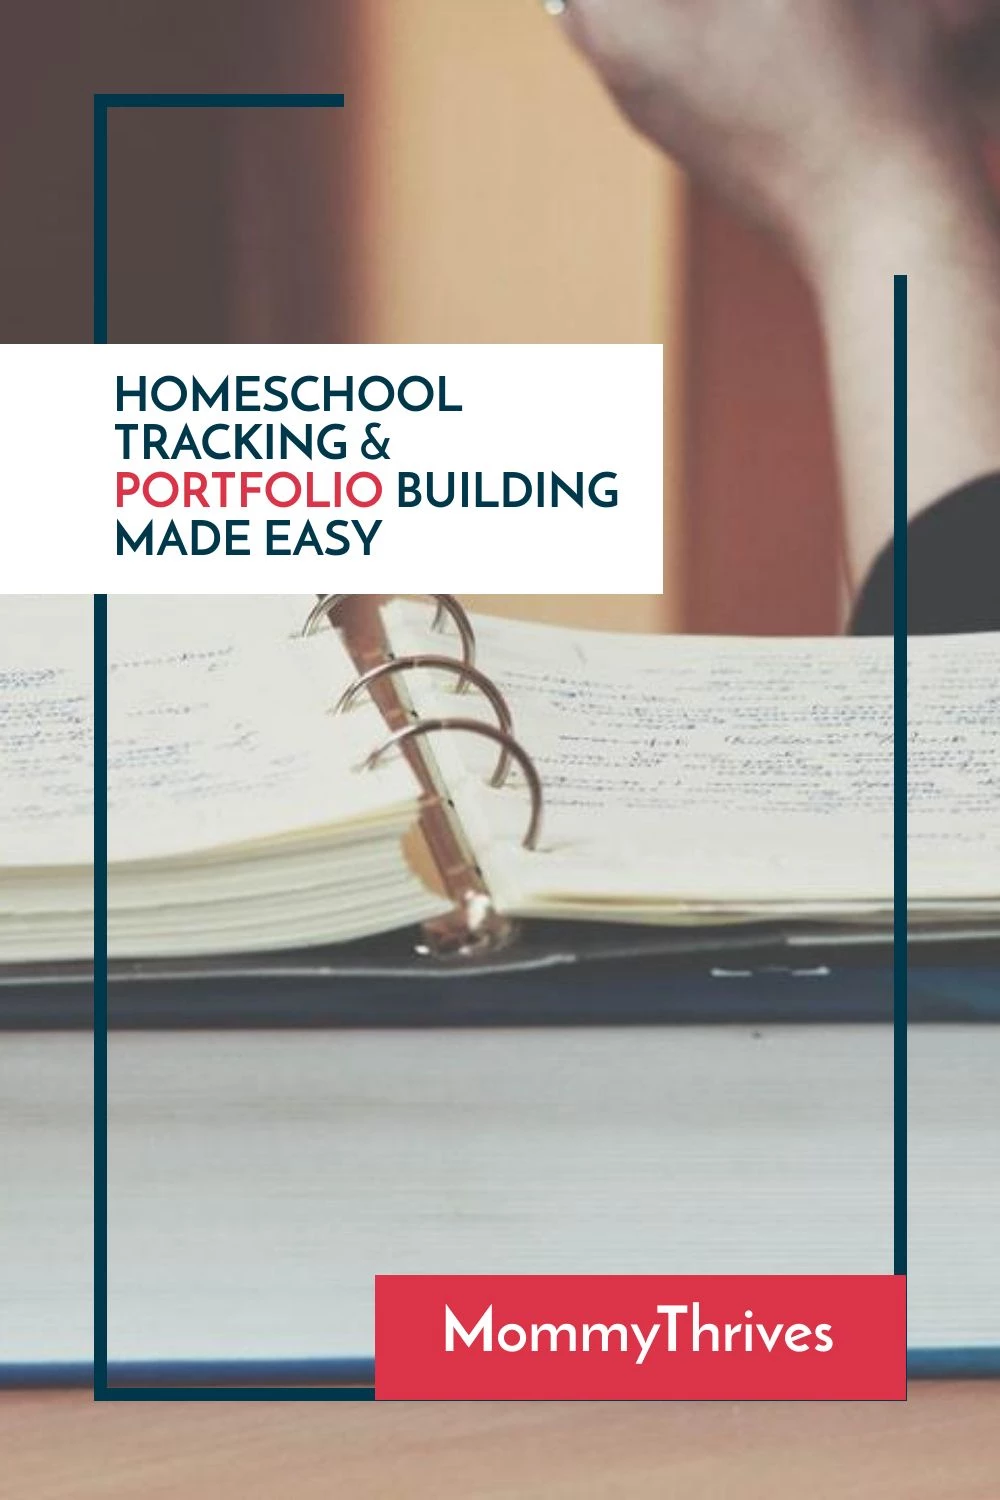 How To Make A Homeschool Portfolio - Homeschool Tracking and Portfolio Made Easy - How To Track Homeschooling